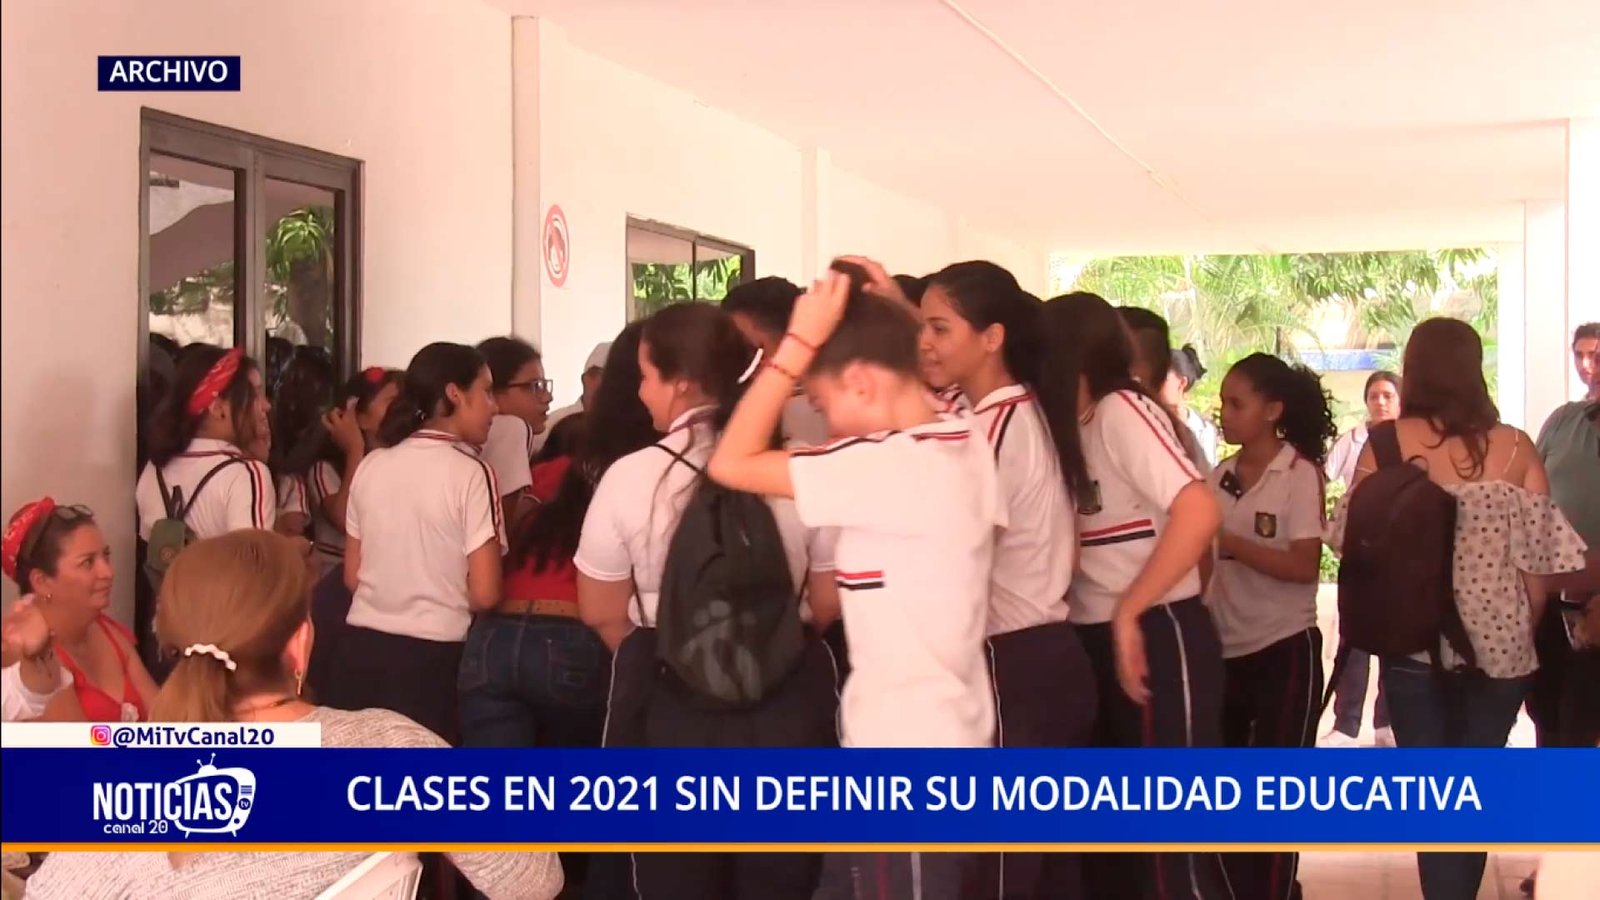 CLASES EN 2021 SIN DEFINIR SU MODALIDAD EDUCATIVA